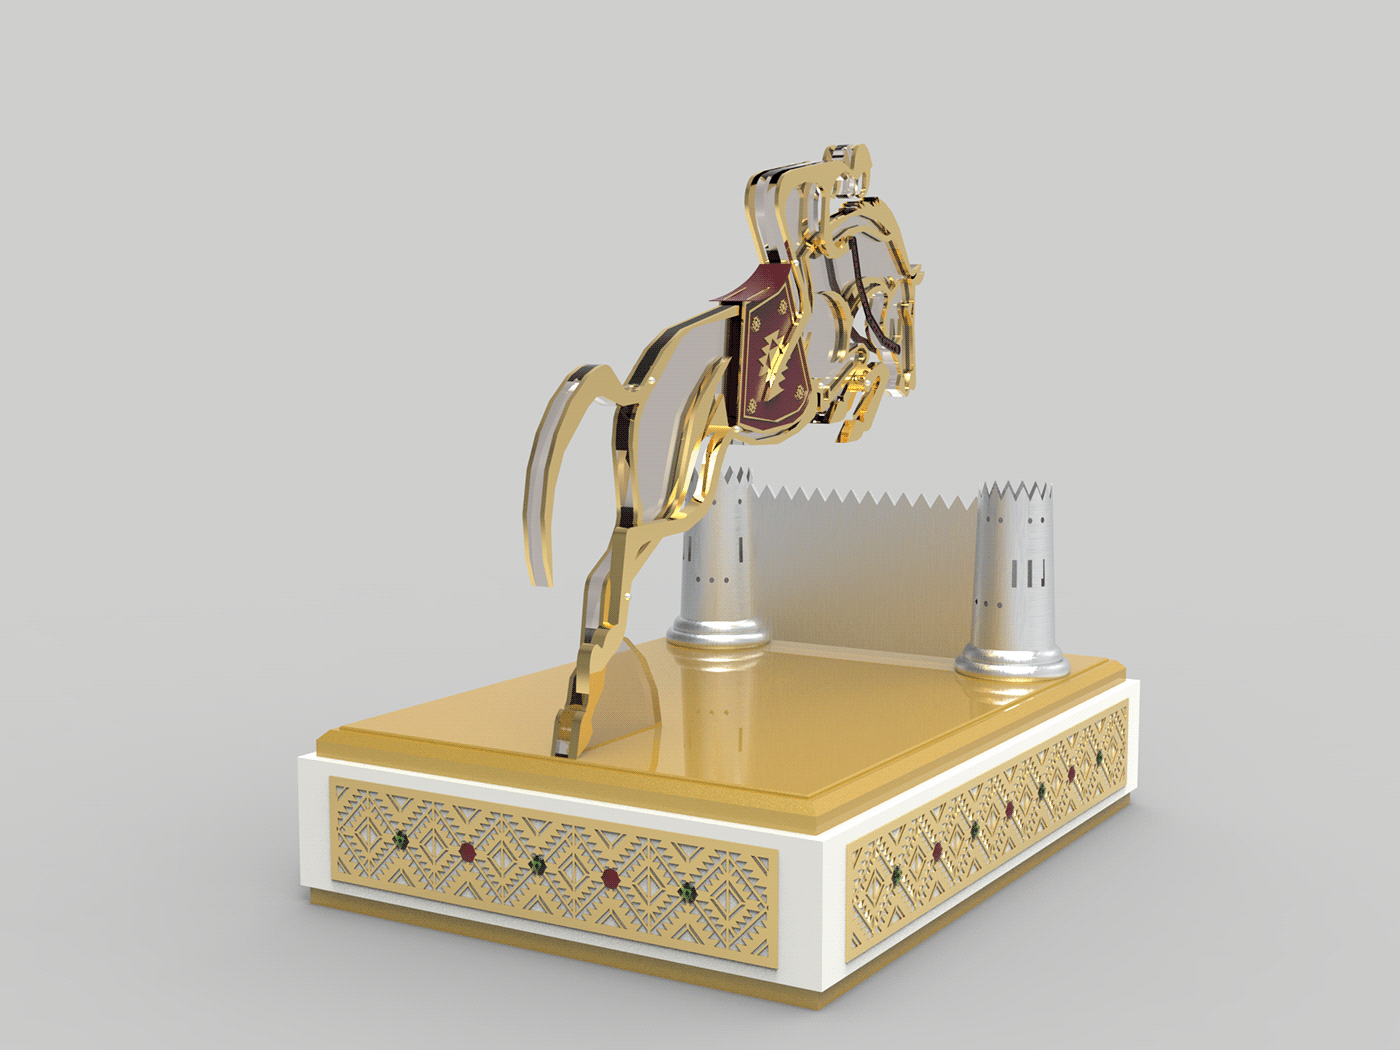 doha Qatar dubai UAE Saudi Arabia Oman Kuwait design horses